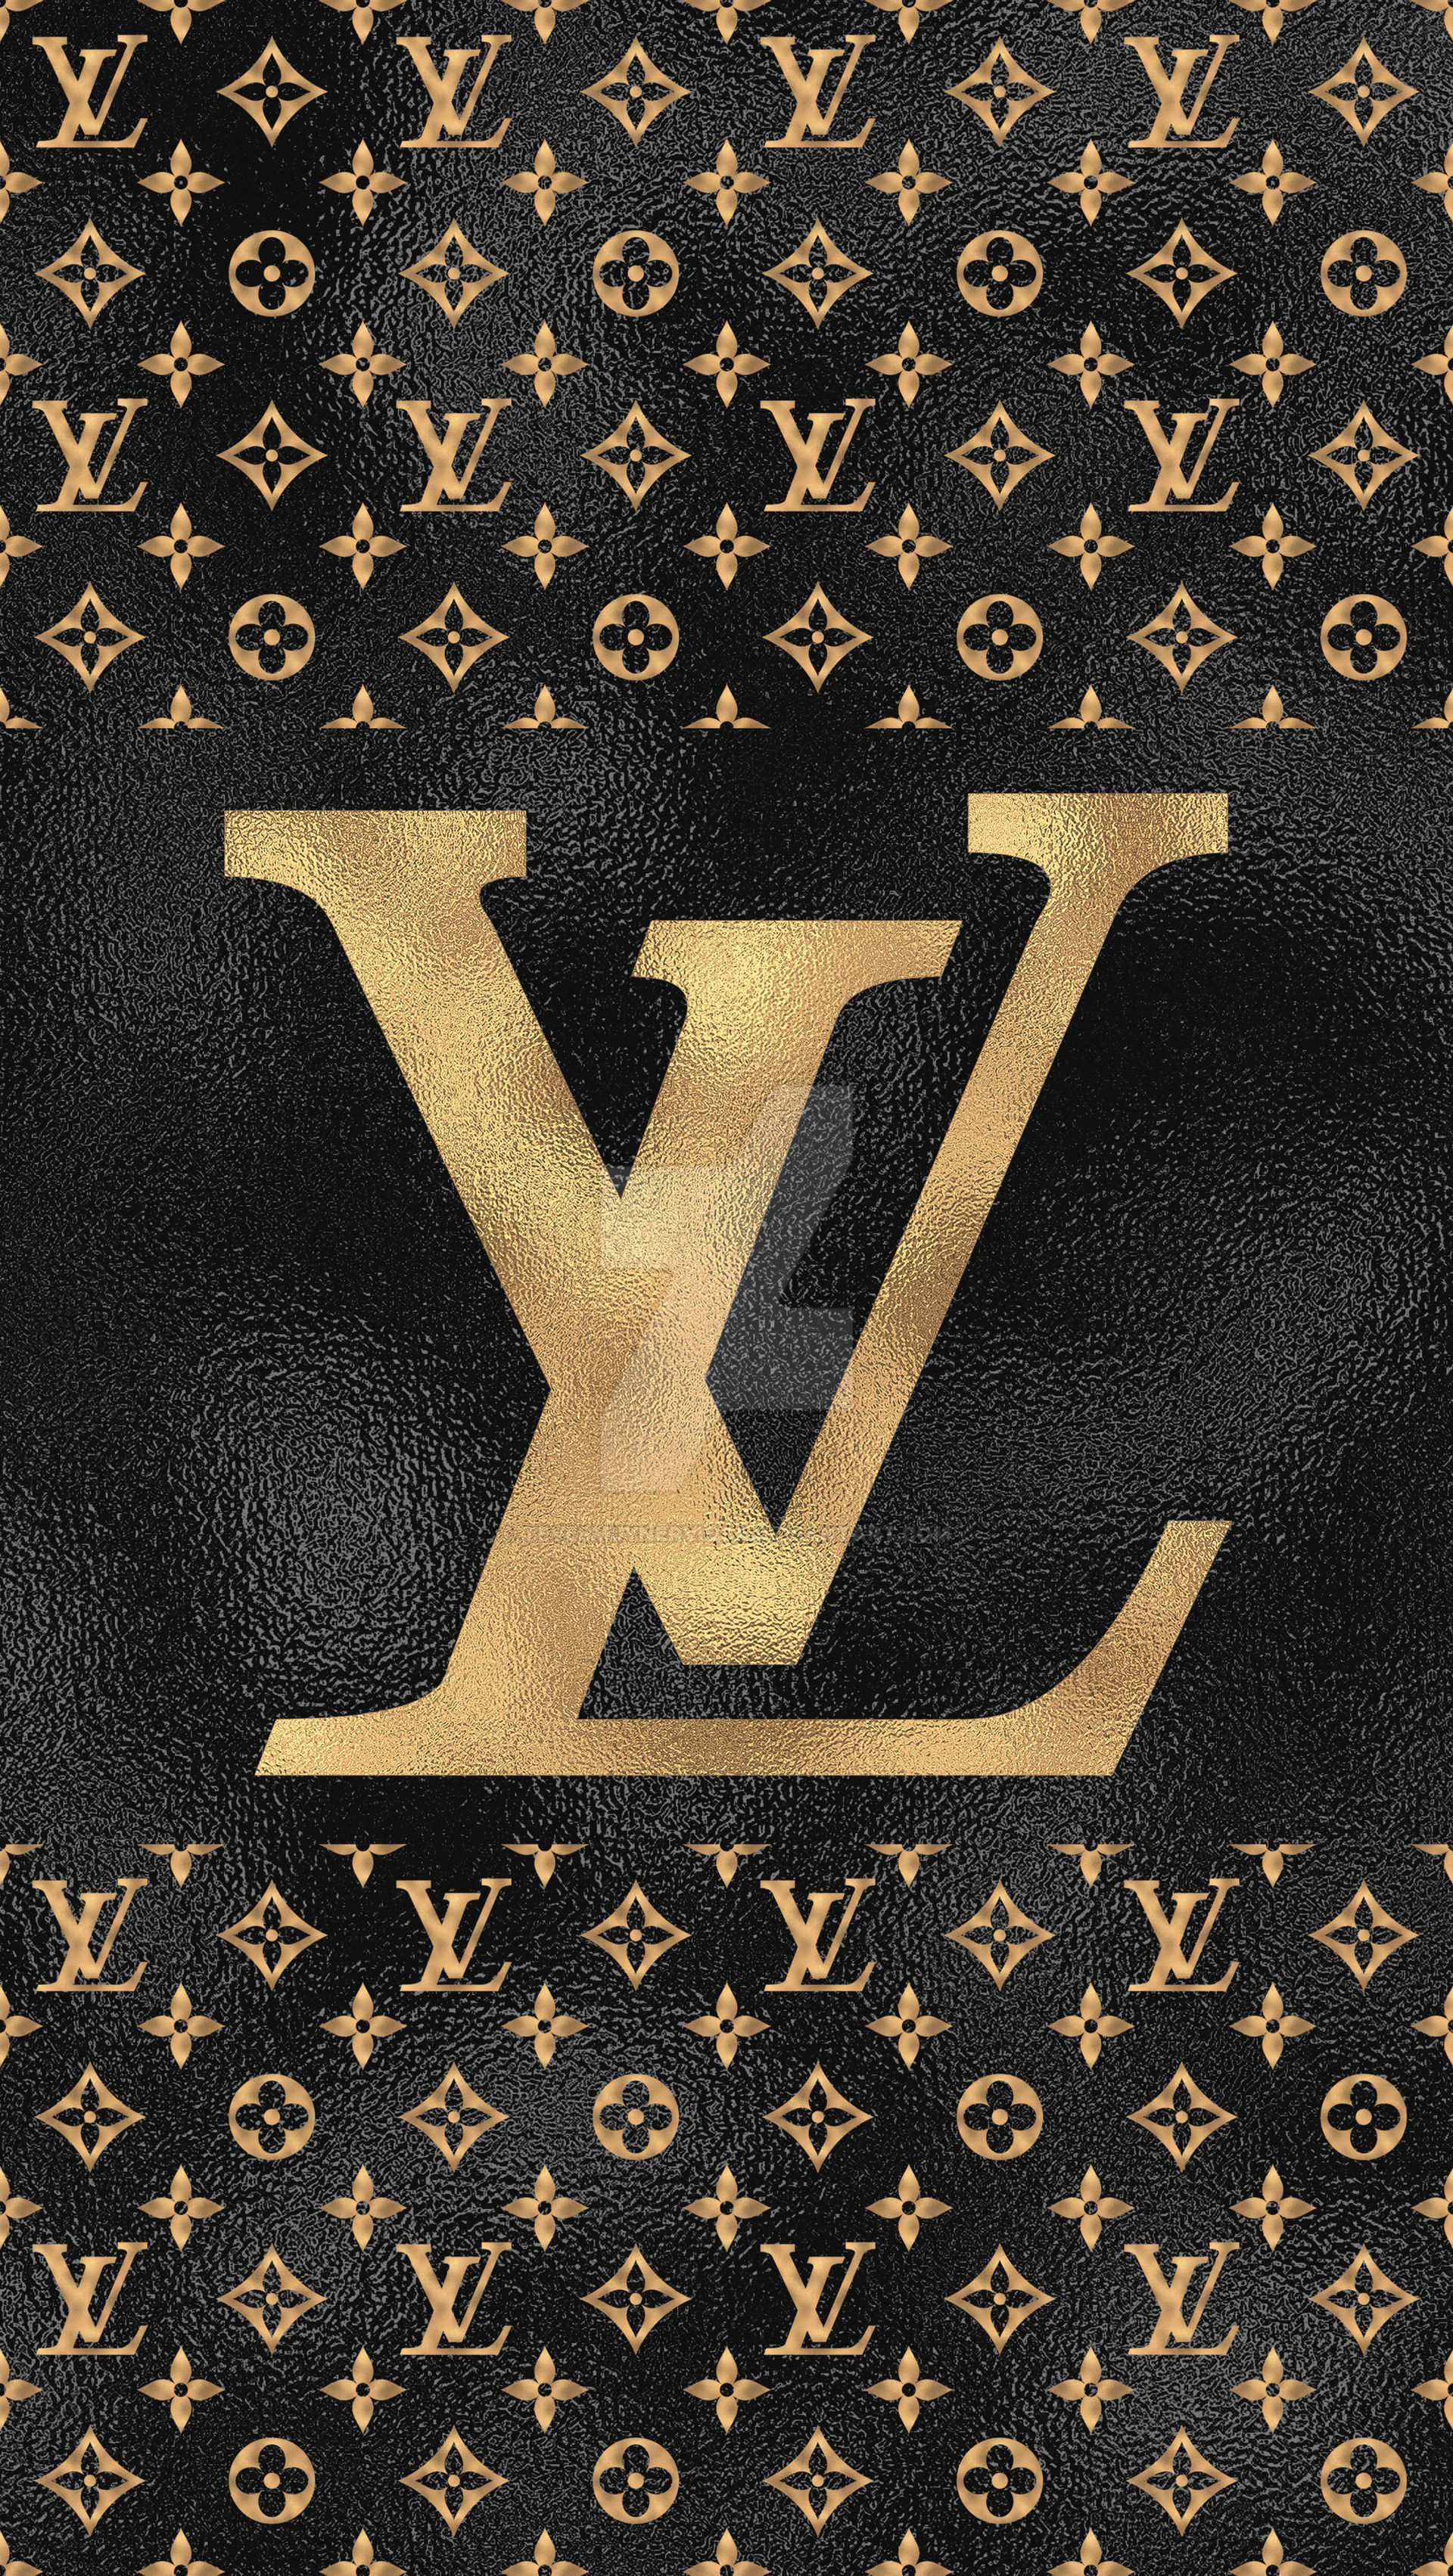 Louis Vuitton, supreme, texture, pattern HD Wallpaper